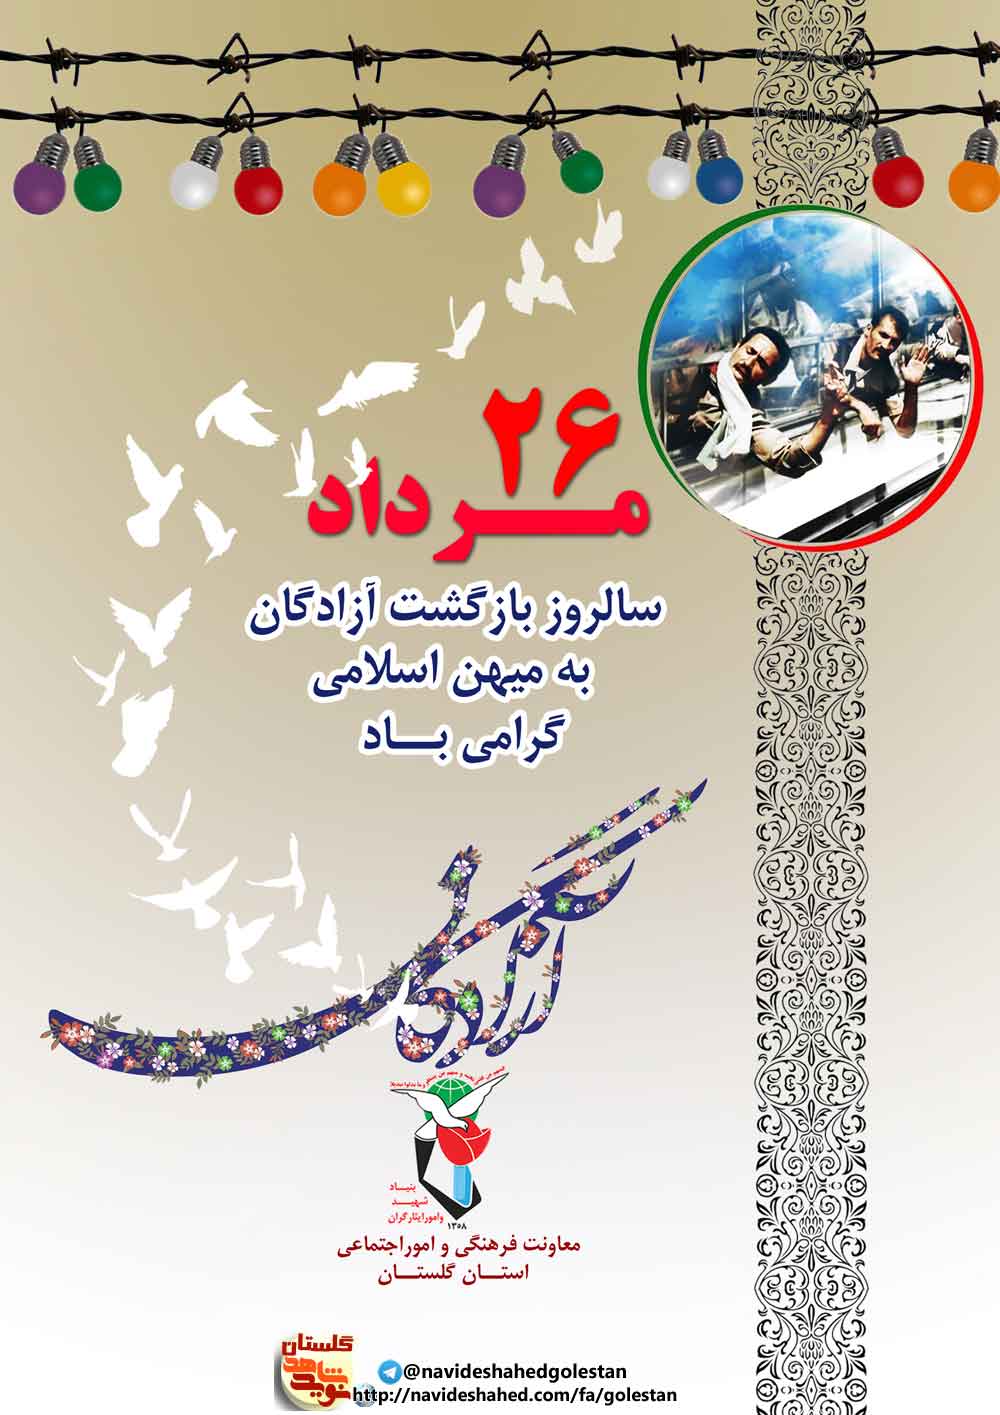 پوستر/ سالروز ورود آزادگان؛ مردان ایثار و مقاومت میهن اسلامی مبارک باد